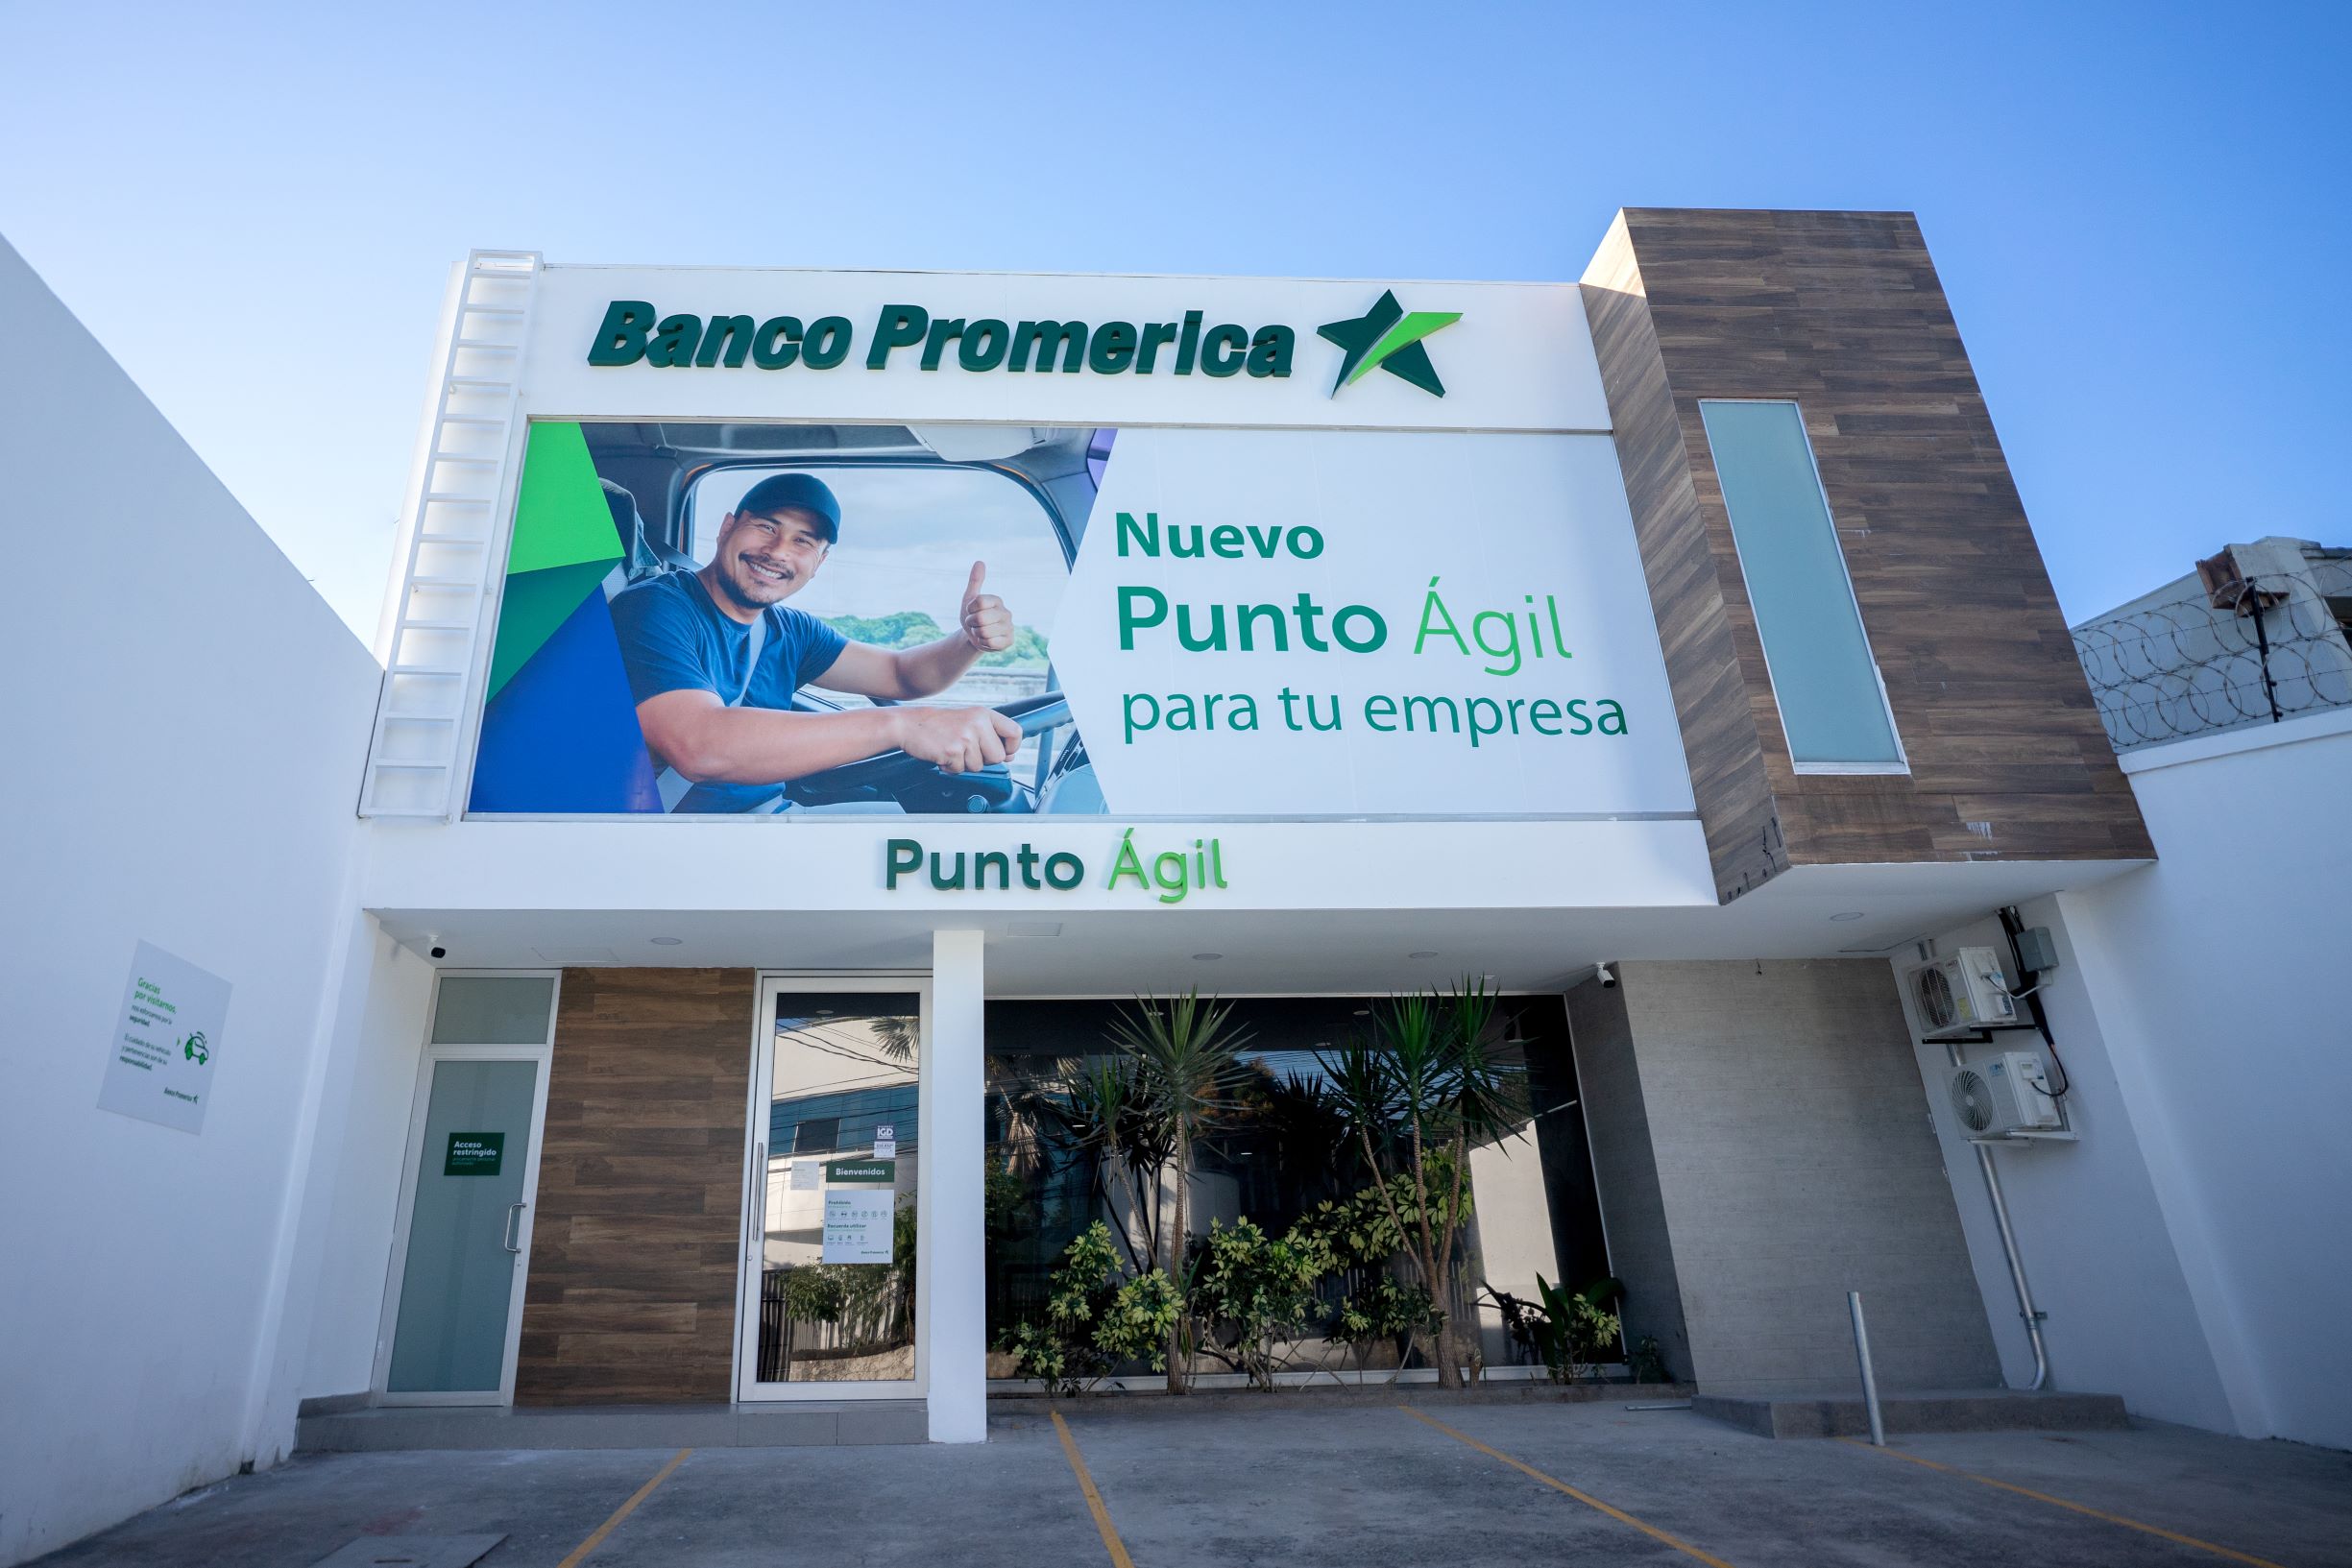 Banco Promerica El Salvador realiza la apertura de un nuevo Punto Ágil para sus clientes empresariales